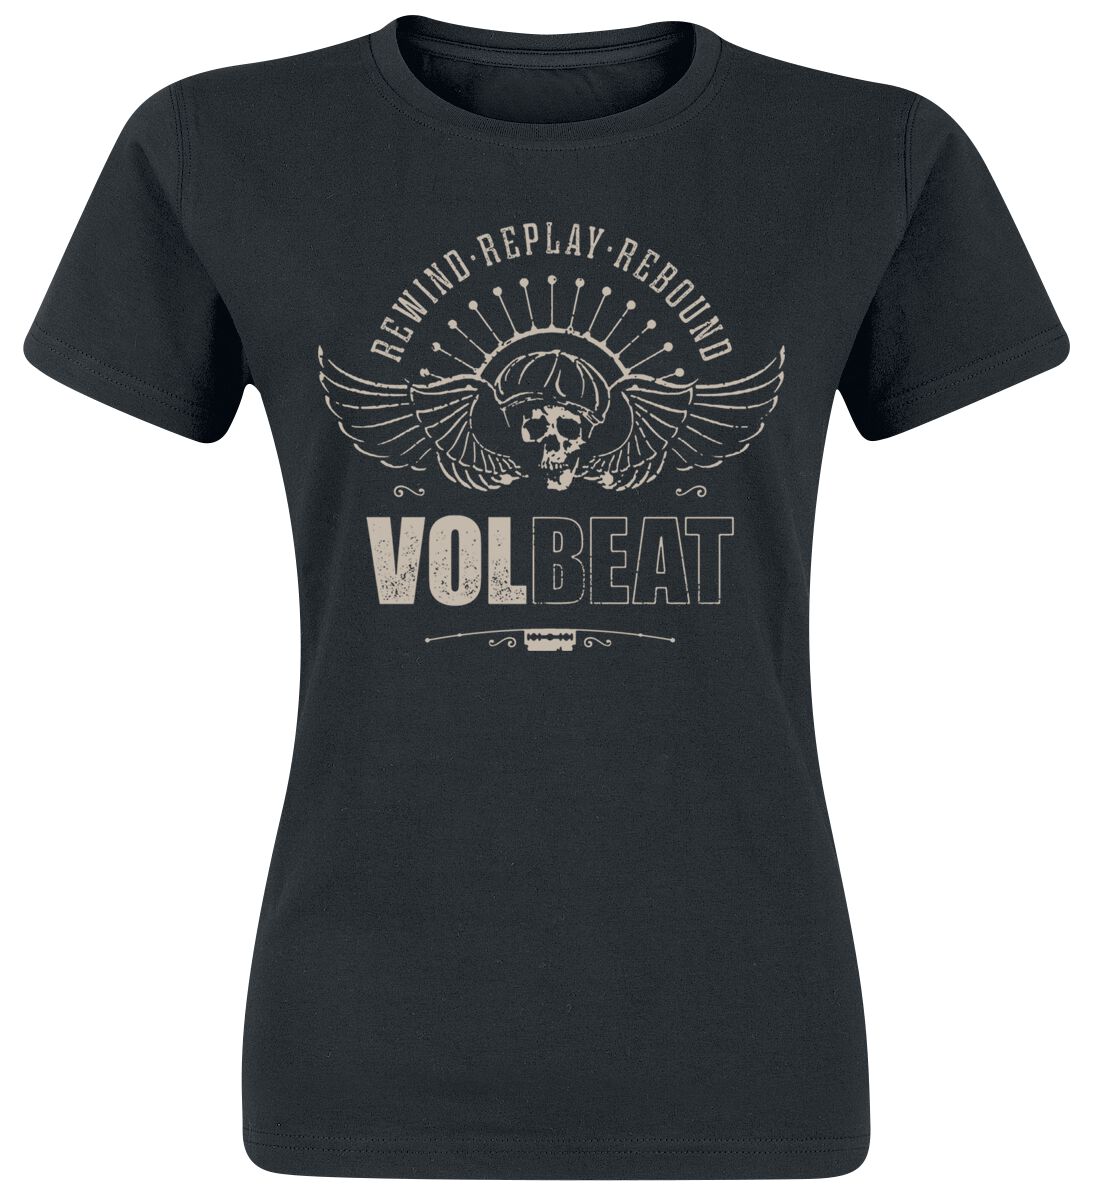 Volbeat T-Shirt - Skullwing - Rewind, Replay, Rebound - S bis 3XL - für Damen - Größe M - schwarz  - EMP exklusives Merchandise!